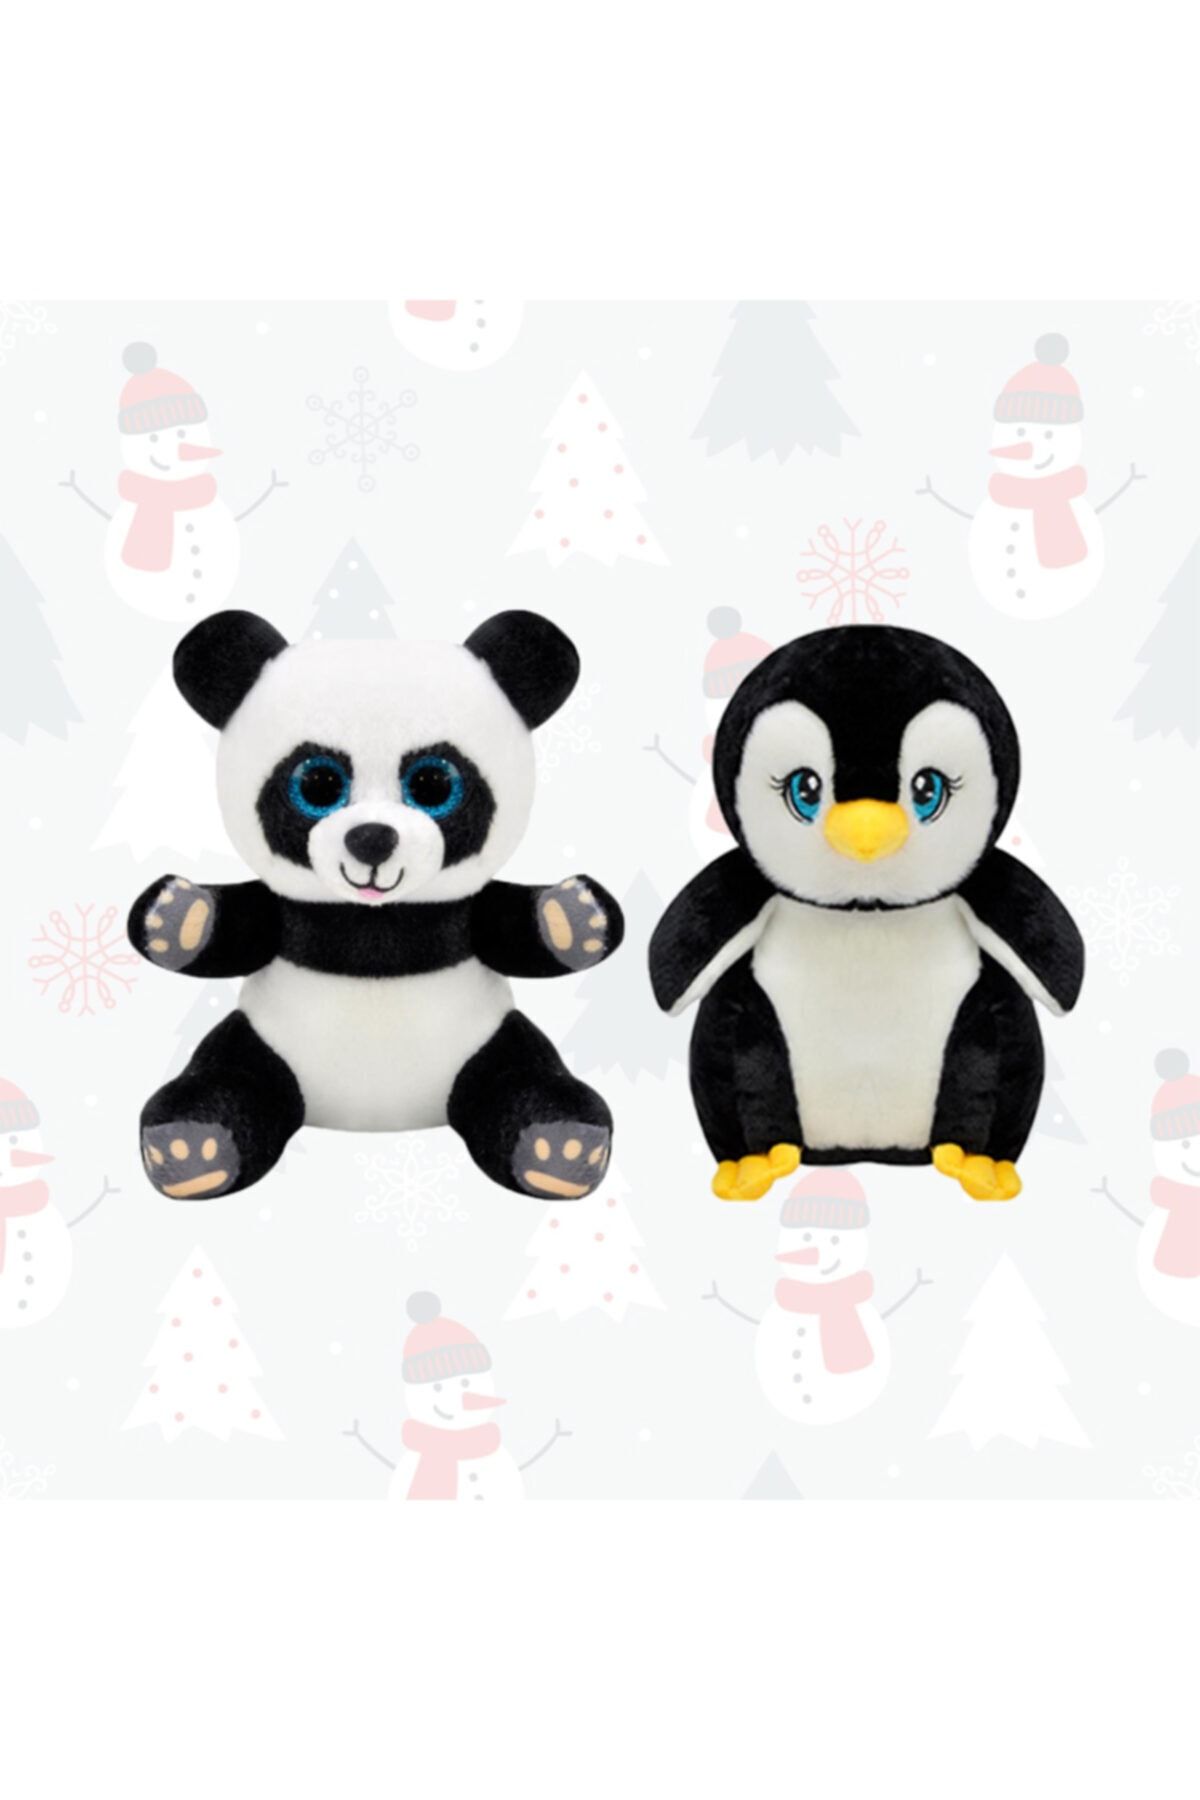 SELAY TOYS Peluş Panda Oyuncak Ve Peluş Penguen Oyuncak 15 Cm Yılbaşı Hediyesi Ve Yılbaşı Ürünleri